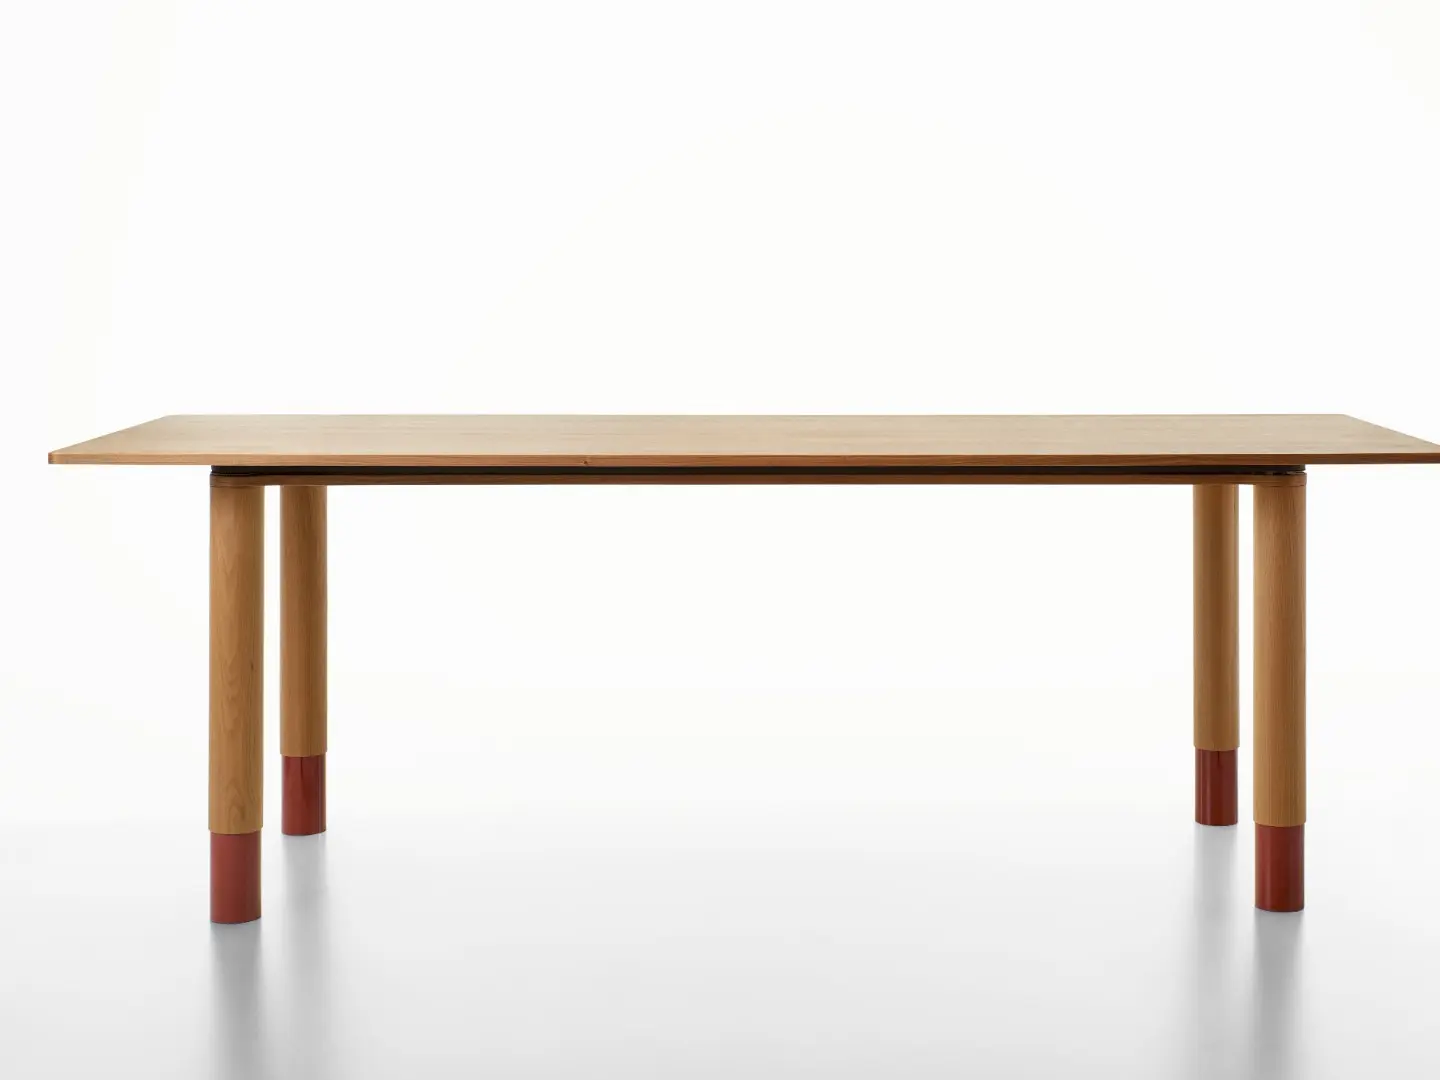 Nastro table, designed by Daniel Rybakken